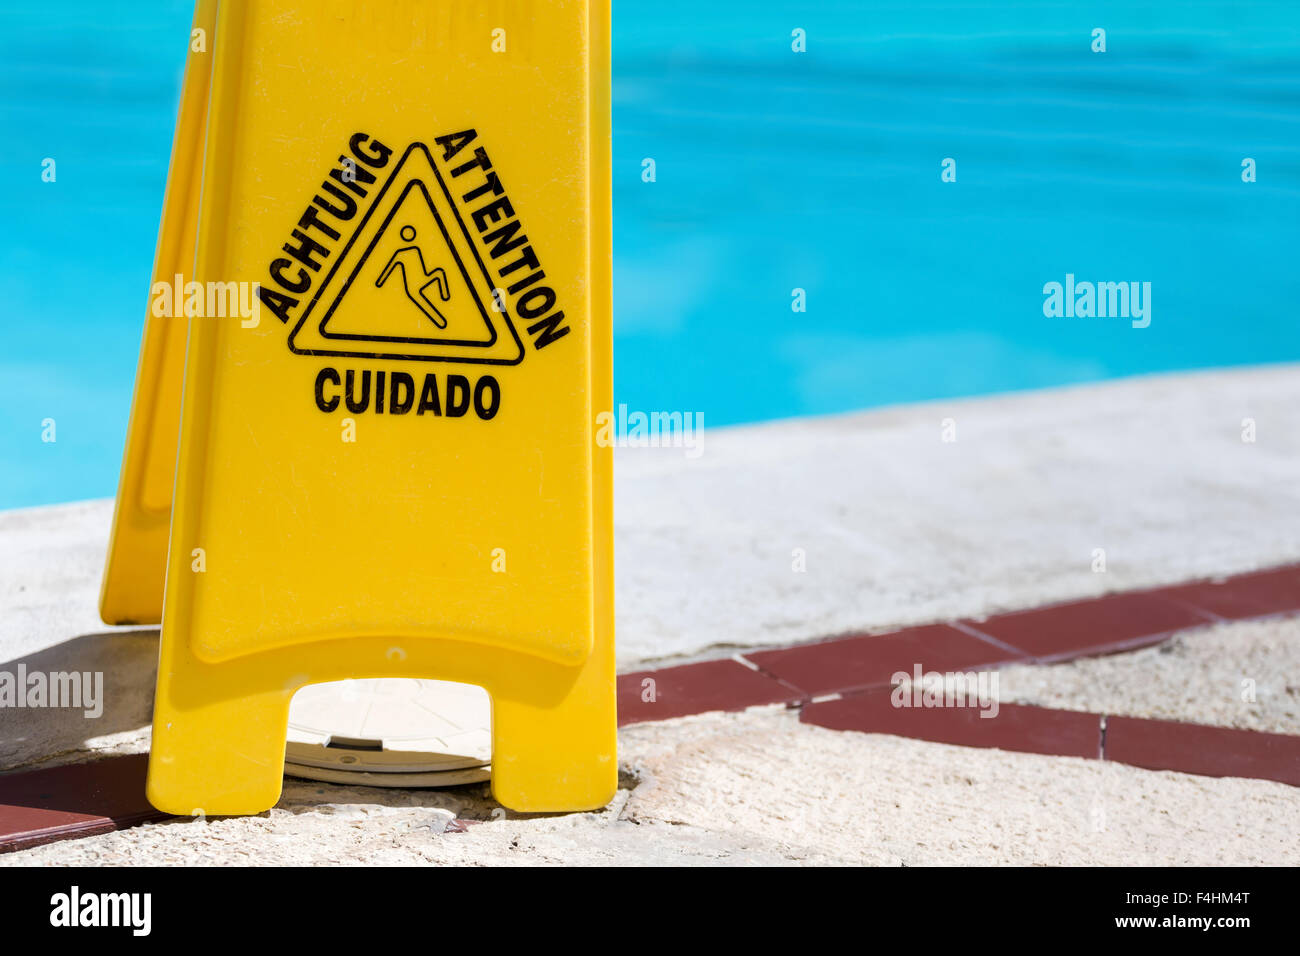 Pavimento bagnato segnale di avvertimento in prossimità di una piscina Foto Stock